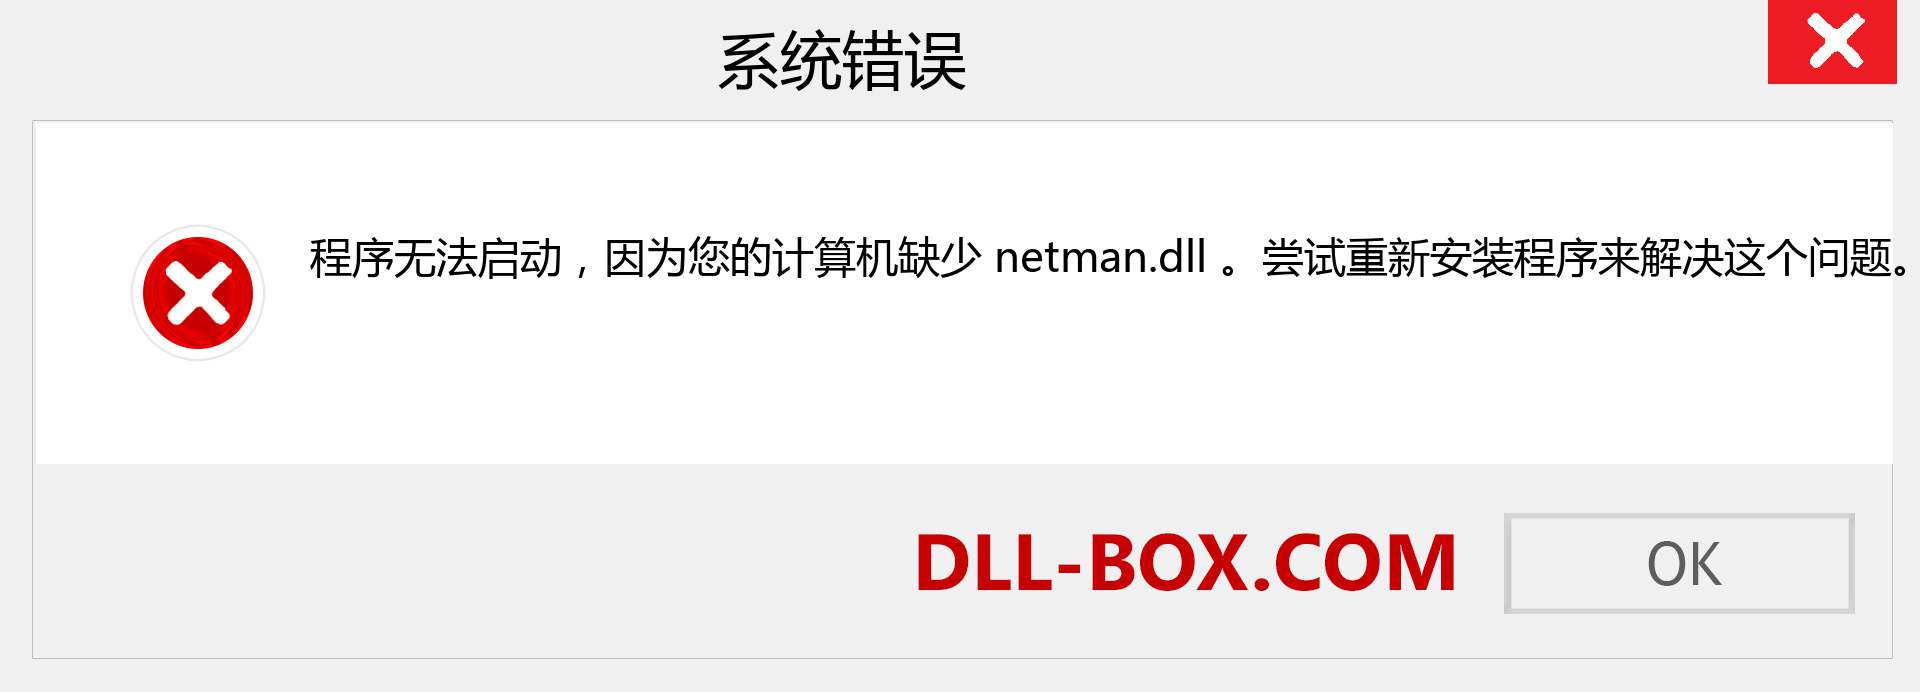 netman.dll 文件丢失？。 适用于 Windows 7、8、10 的下载 - 修复 Windows、照片、图像上的 netman dll 丢失错误